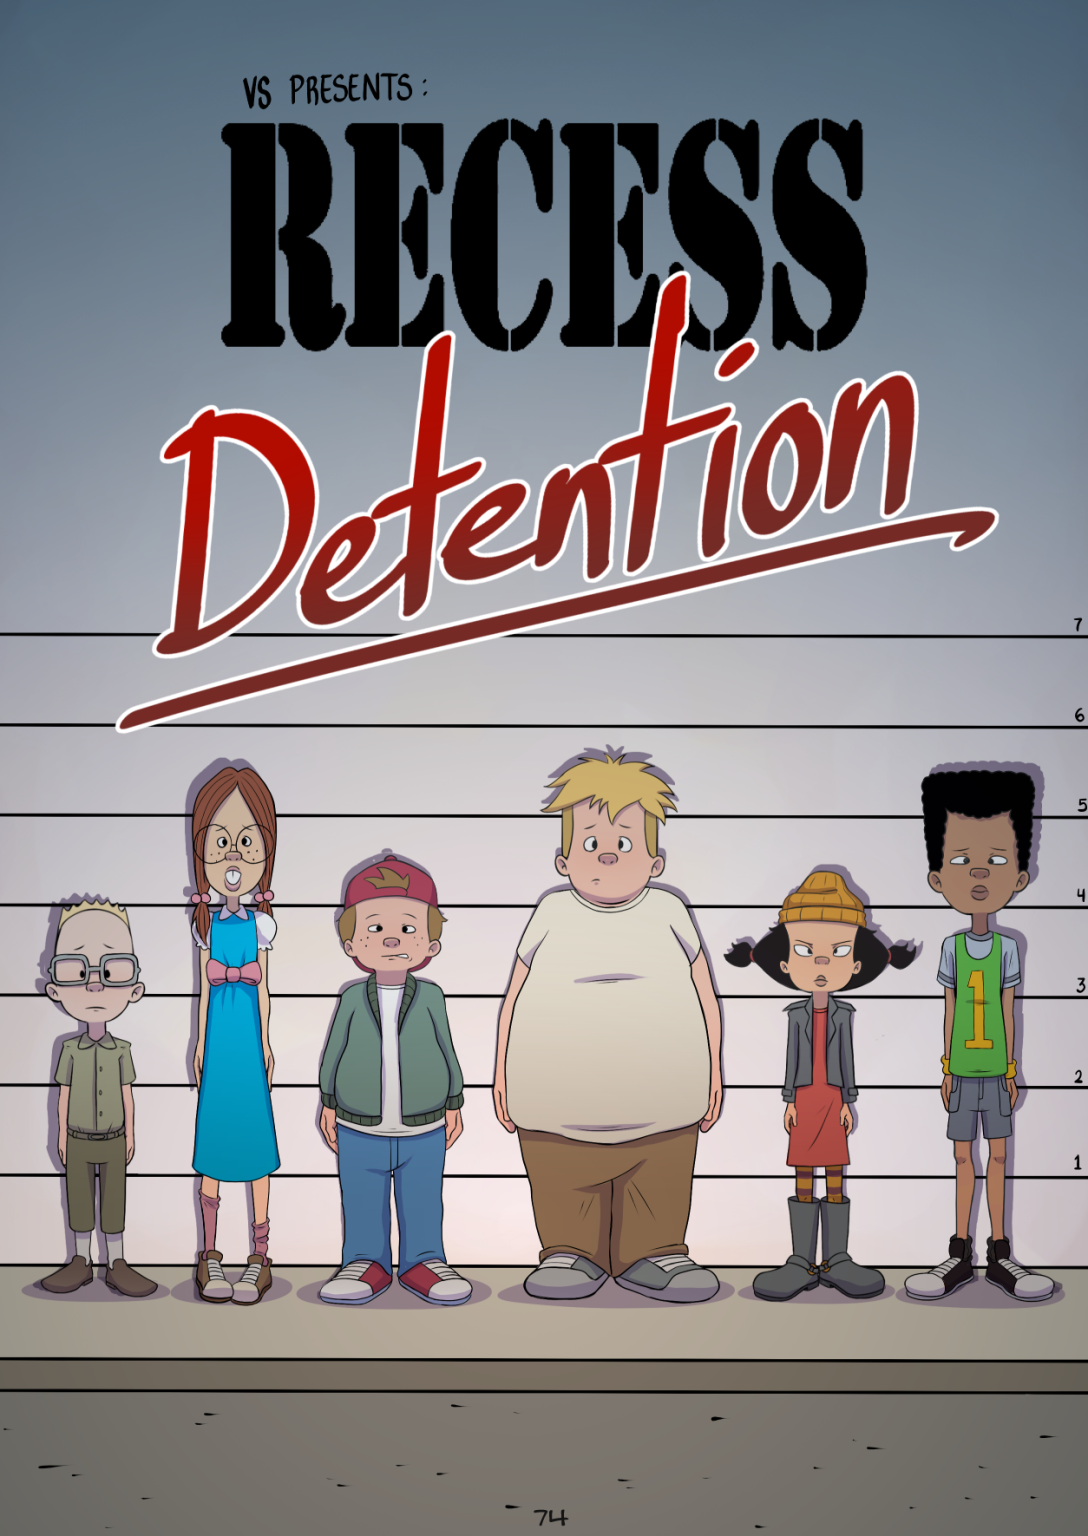 Recess - Detention porn comic picture 1